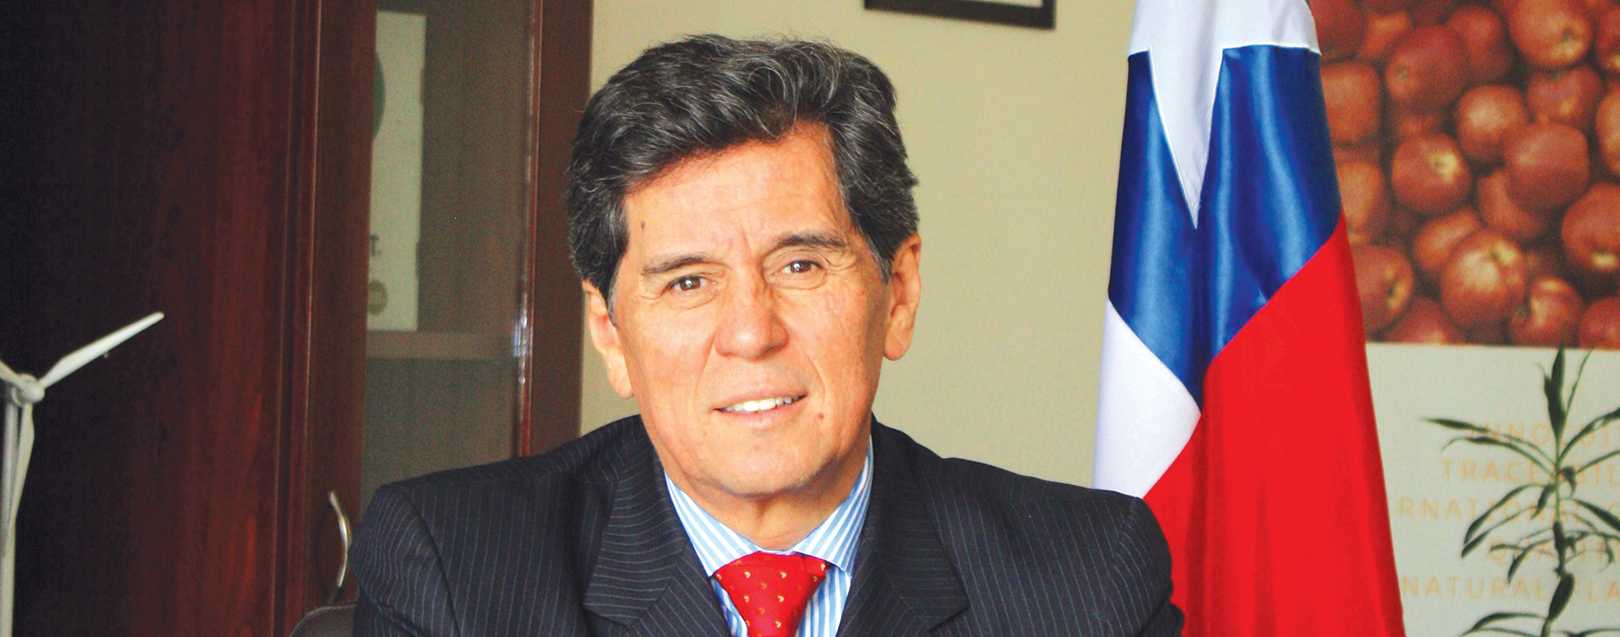 Anuncian al nuevo embajador de Chile en Perú